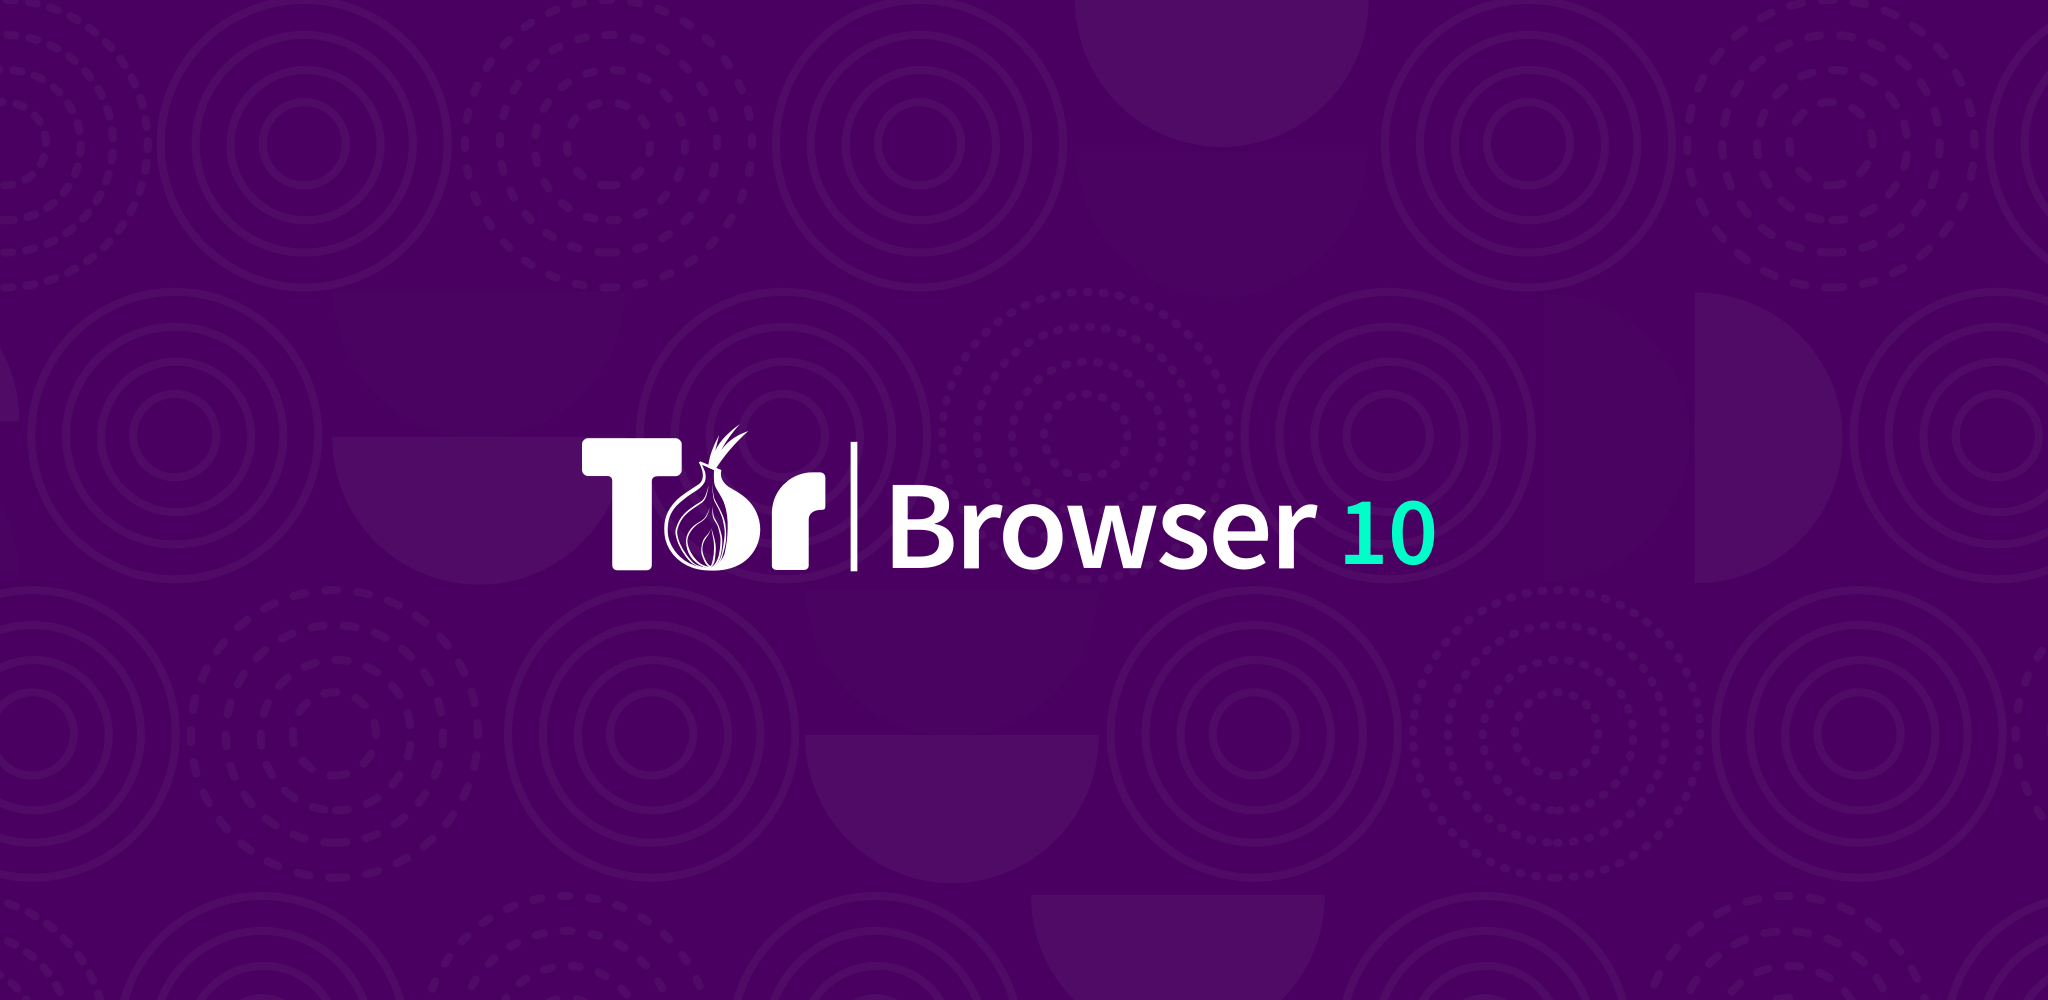 Tor browser for freebsd mega тор браузер скачать бесплатно на русском для iphone мега